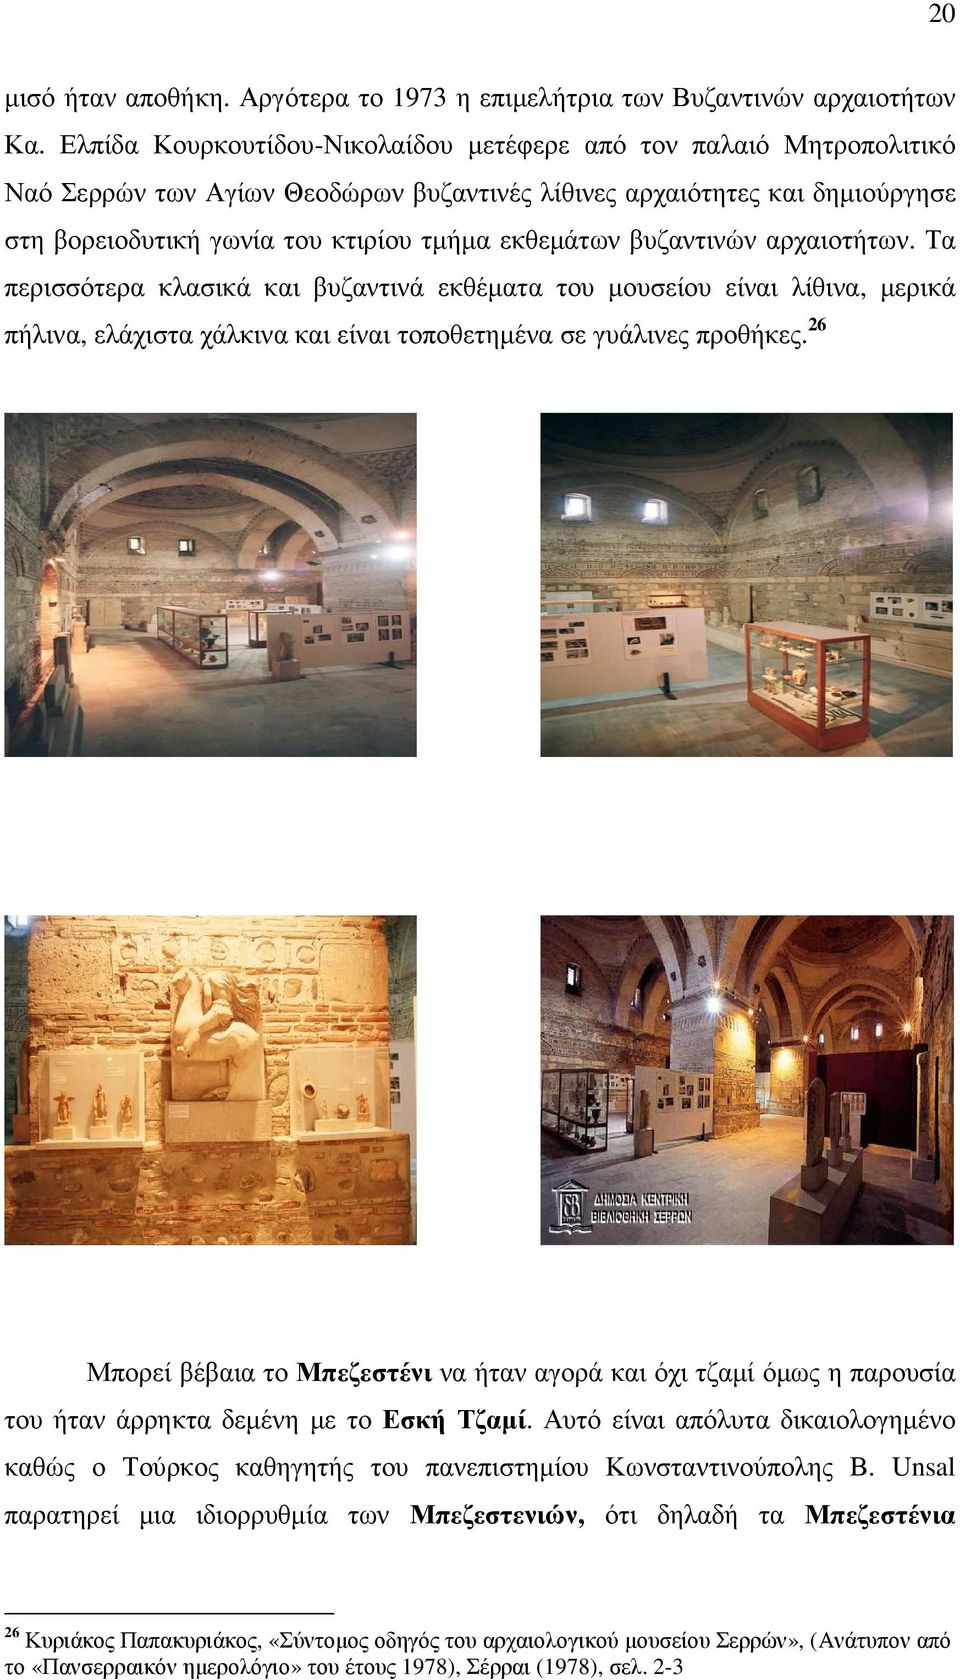 βυζαντινών αρχαιοτήτων. Τα περισσότερα κλασικά και βυζαντινά εκθέµατα του µουσείου είναι λίθινα, µερικά πήλινα, ελάχιστα χάλκινα και είναι τοποθετηµένα σε γυάλινες προθήκες.